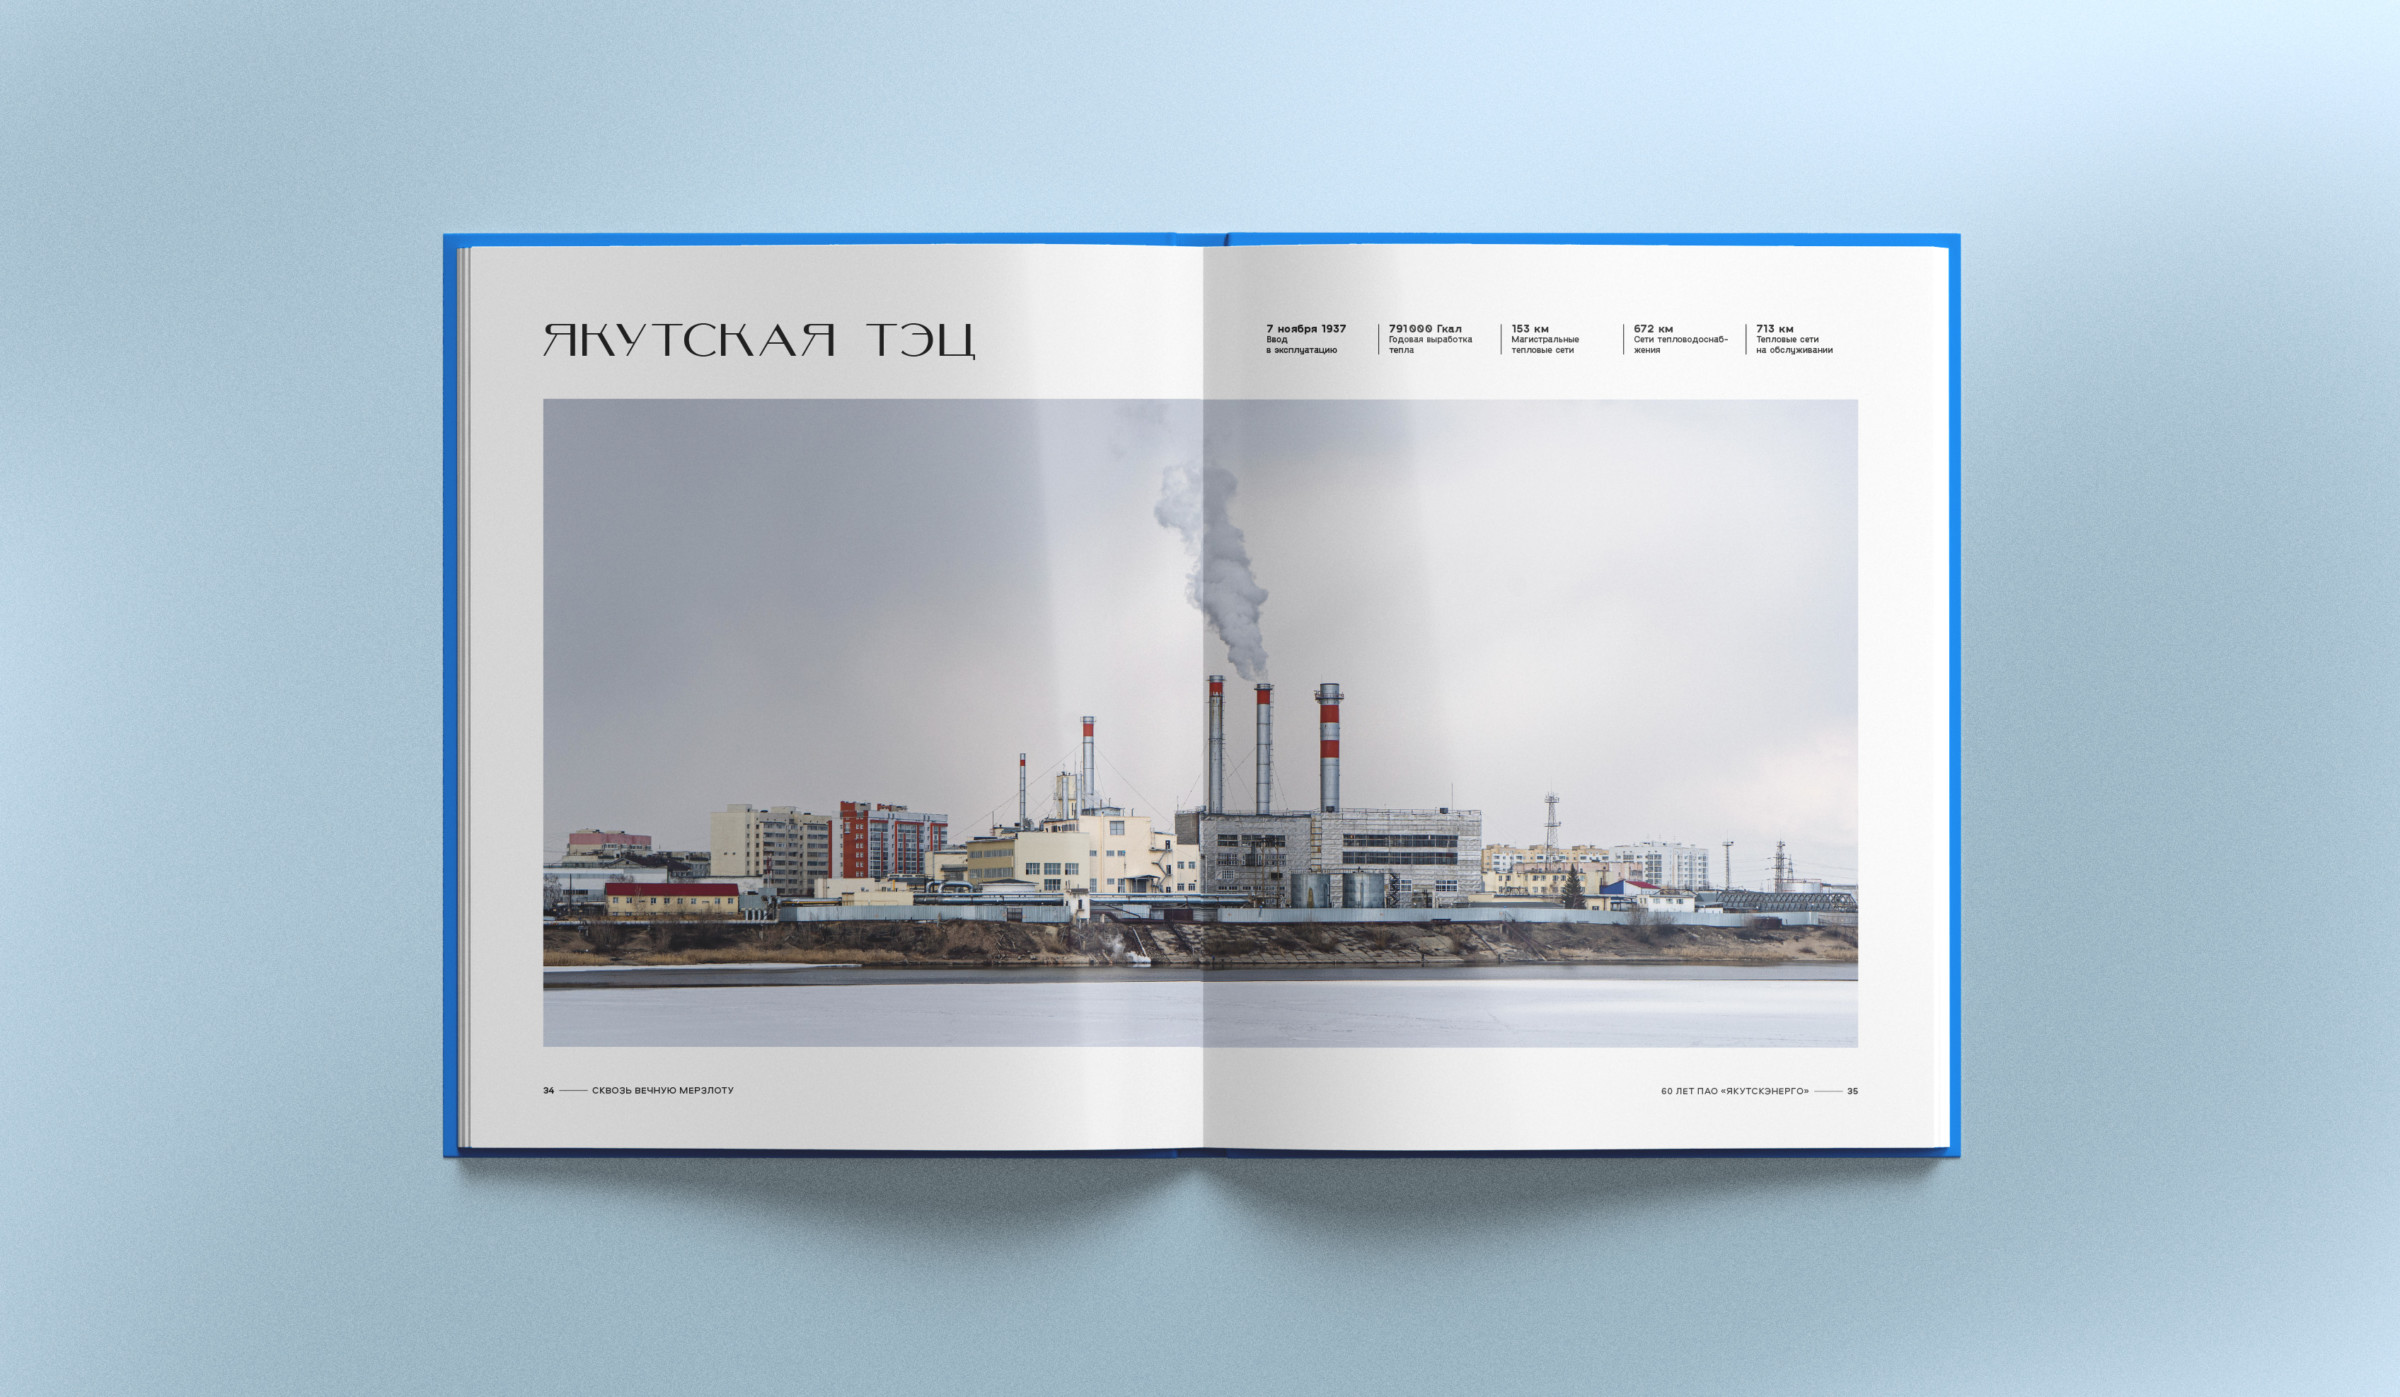 Якутская ТЭЦ, сделали панорамные и художественные фотографии предприятий энергетики Якутии, юбилейная корпоративная книга